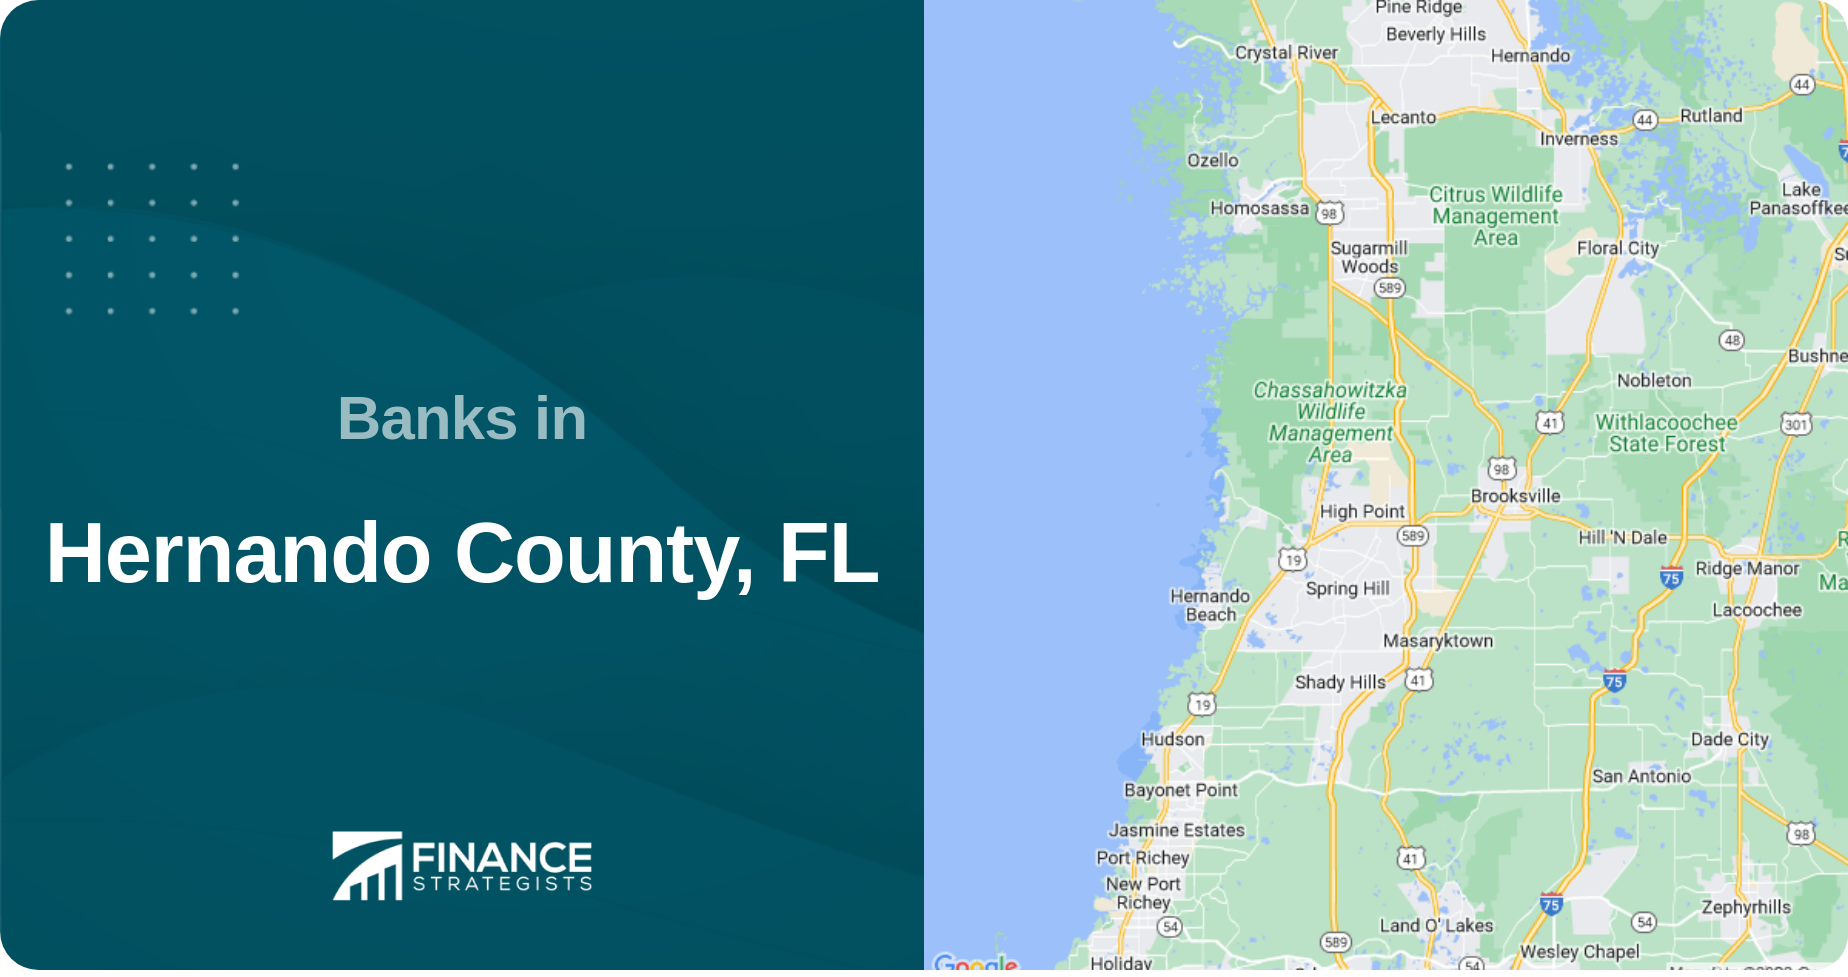 Banks in Hernando County, FL